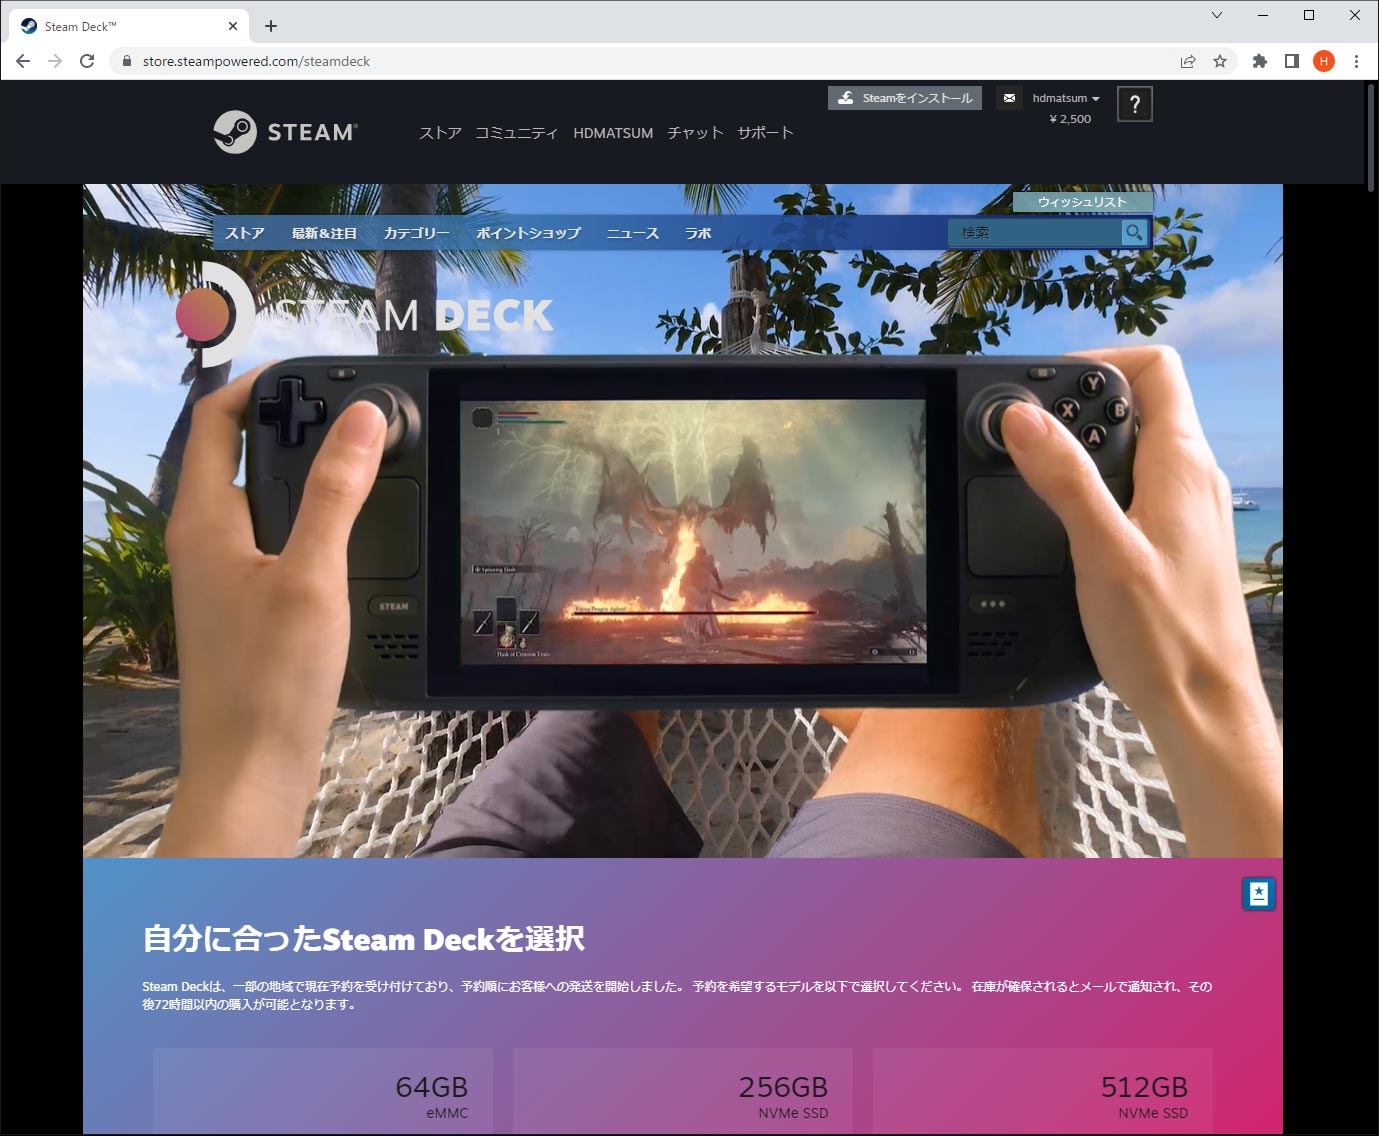 携帯型ゲーム機 Steam Deck が日本に上陸 Web上で予約を開始 日経クロストレンド